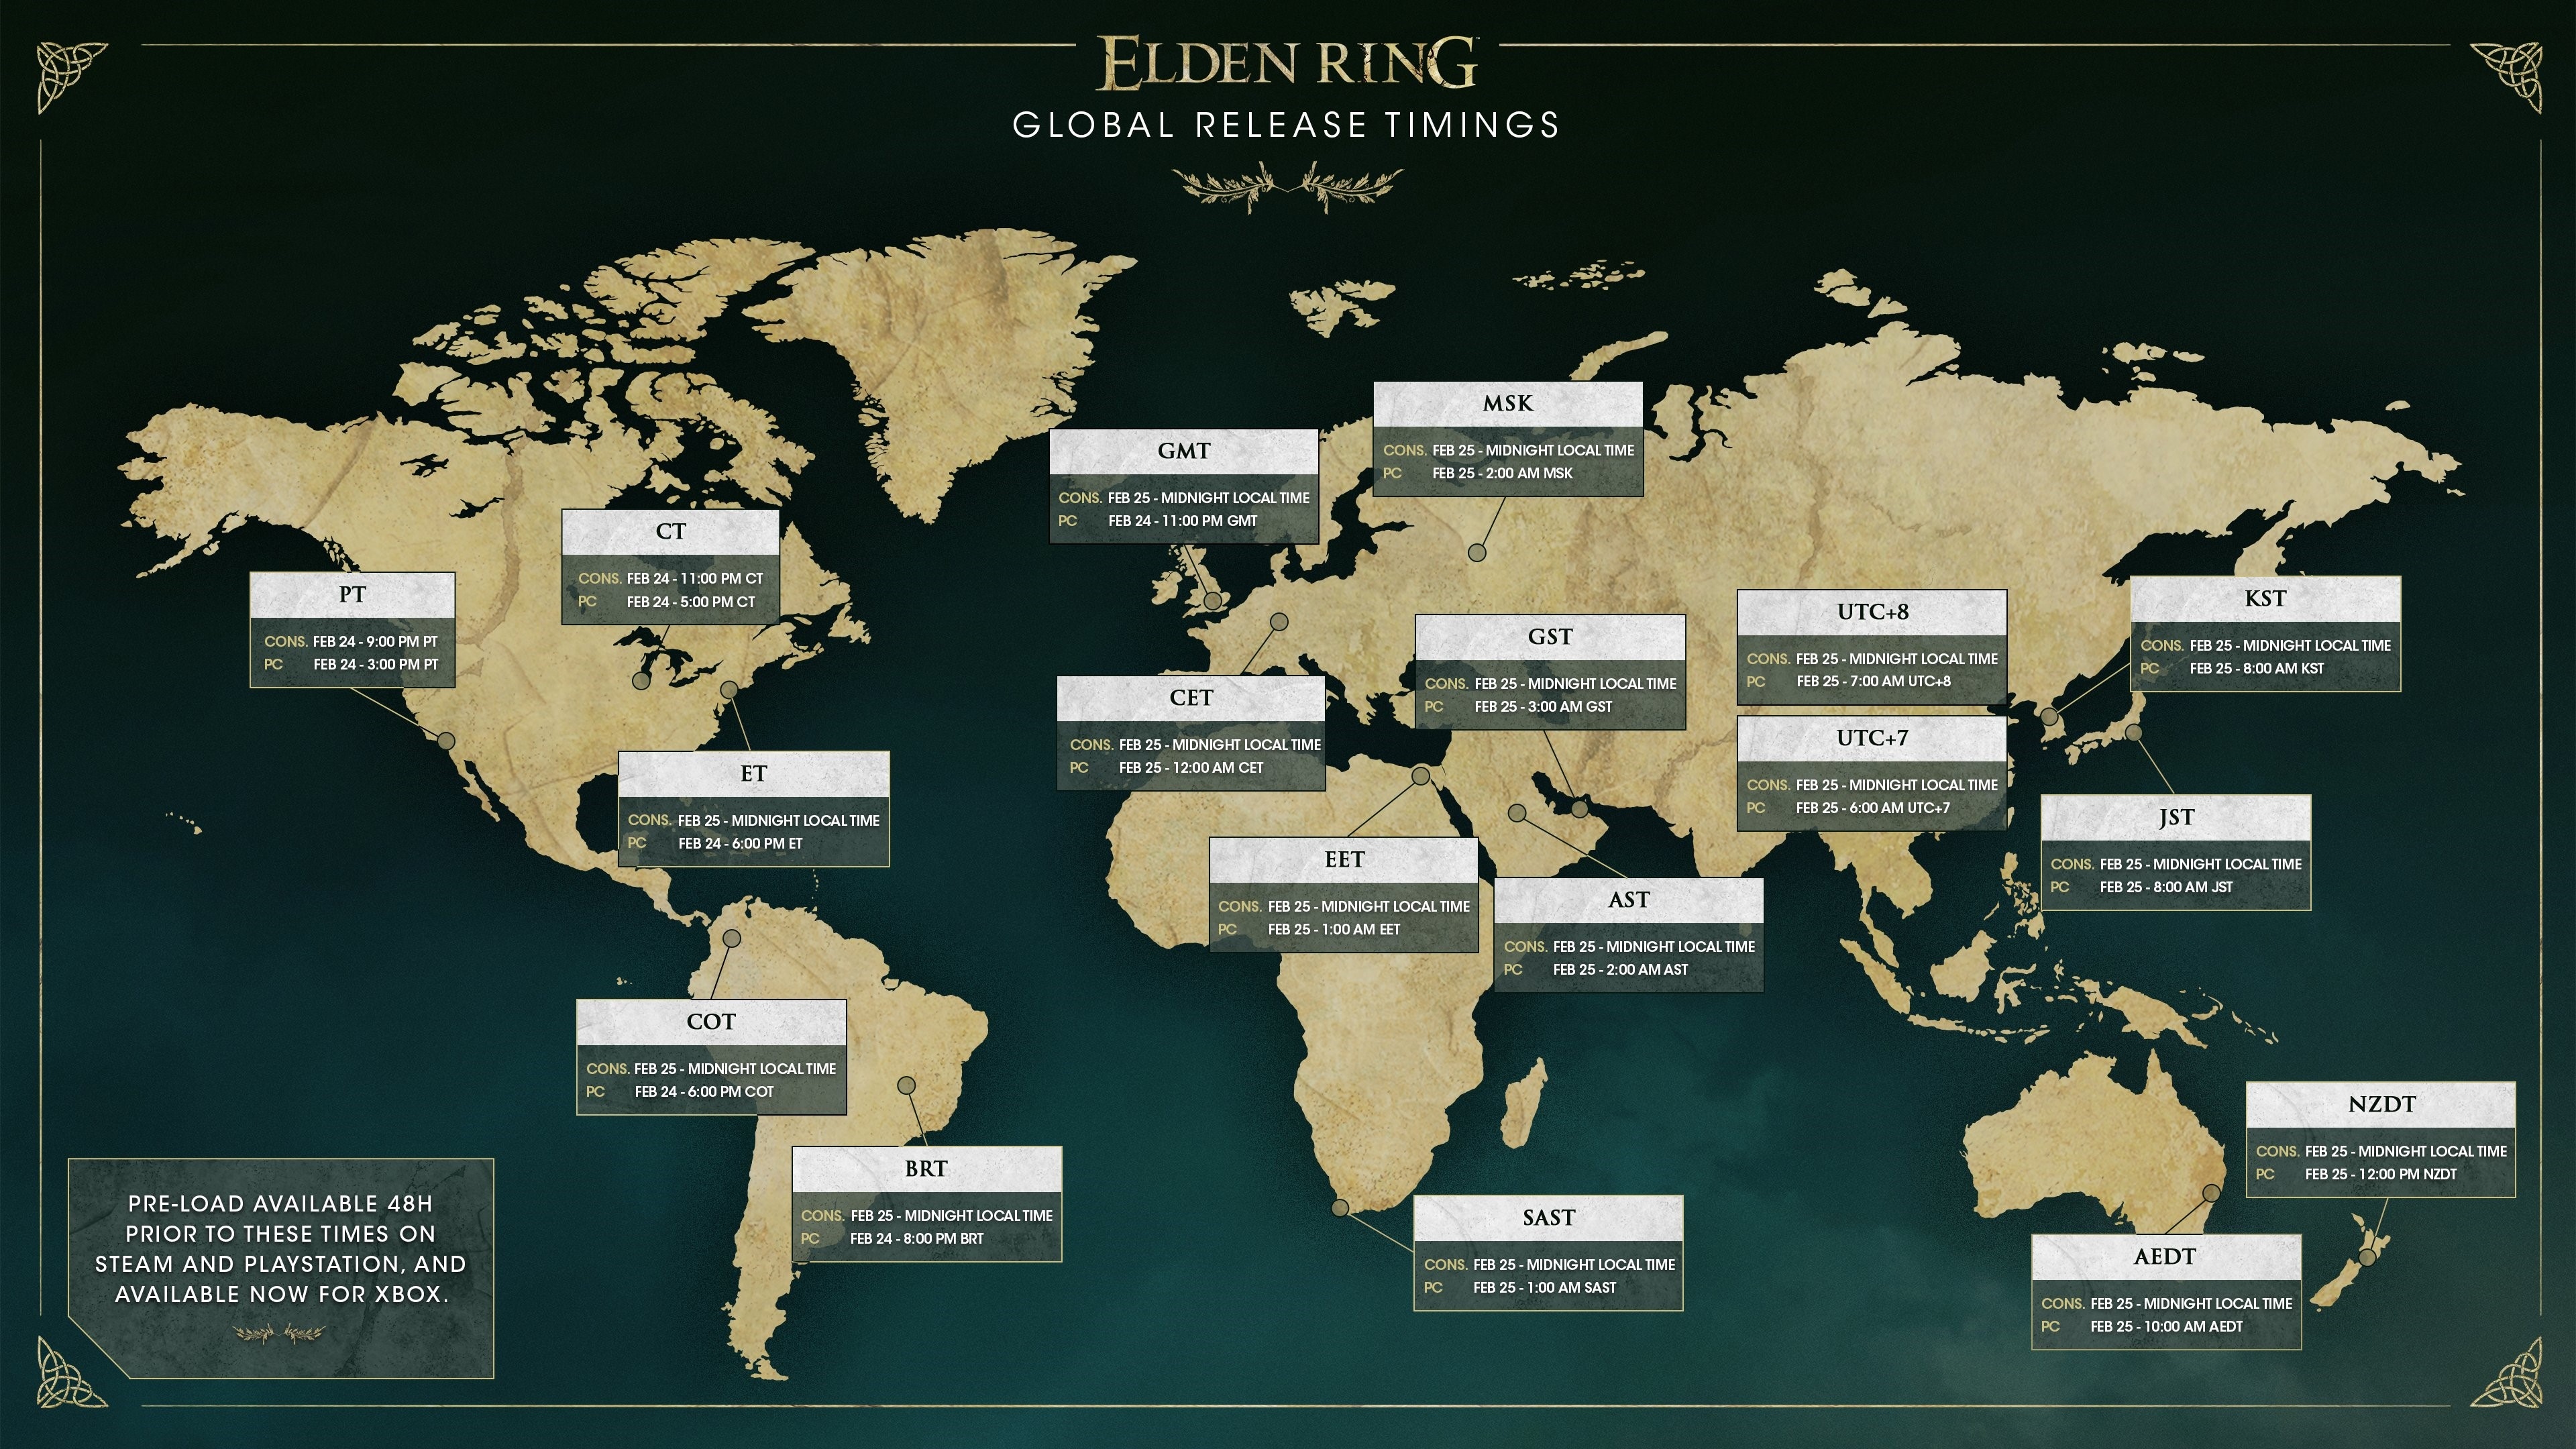 elden ring release schedule